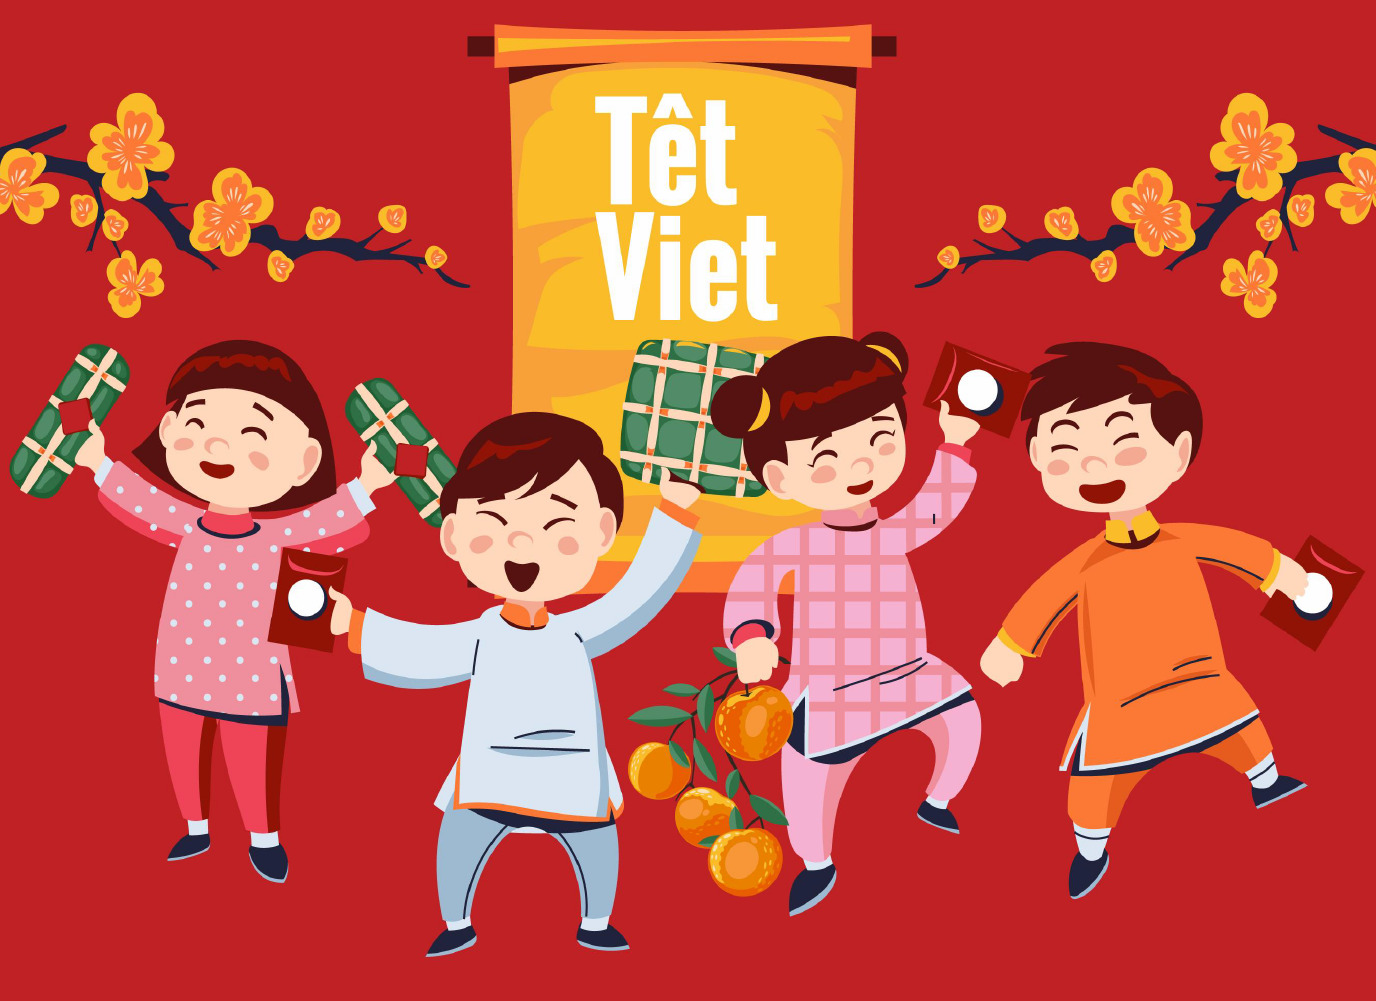 Đón tết trong không khí ấm áp của gia đình là một truyền thống quan trọng của người Việt. Với những hoạt động tết gia đình đầy ý nghĩa, cả gia đình sẽ có những khoảnh khắc khó quên và tạo dựng thêm tình cảm bền vững.